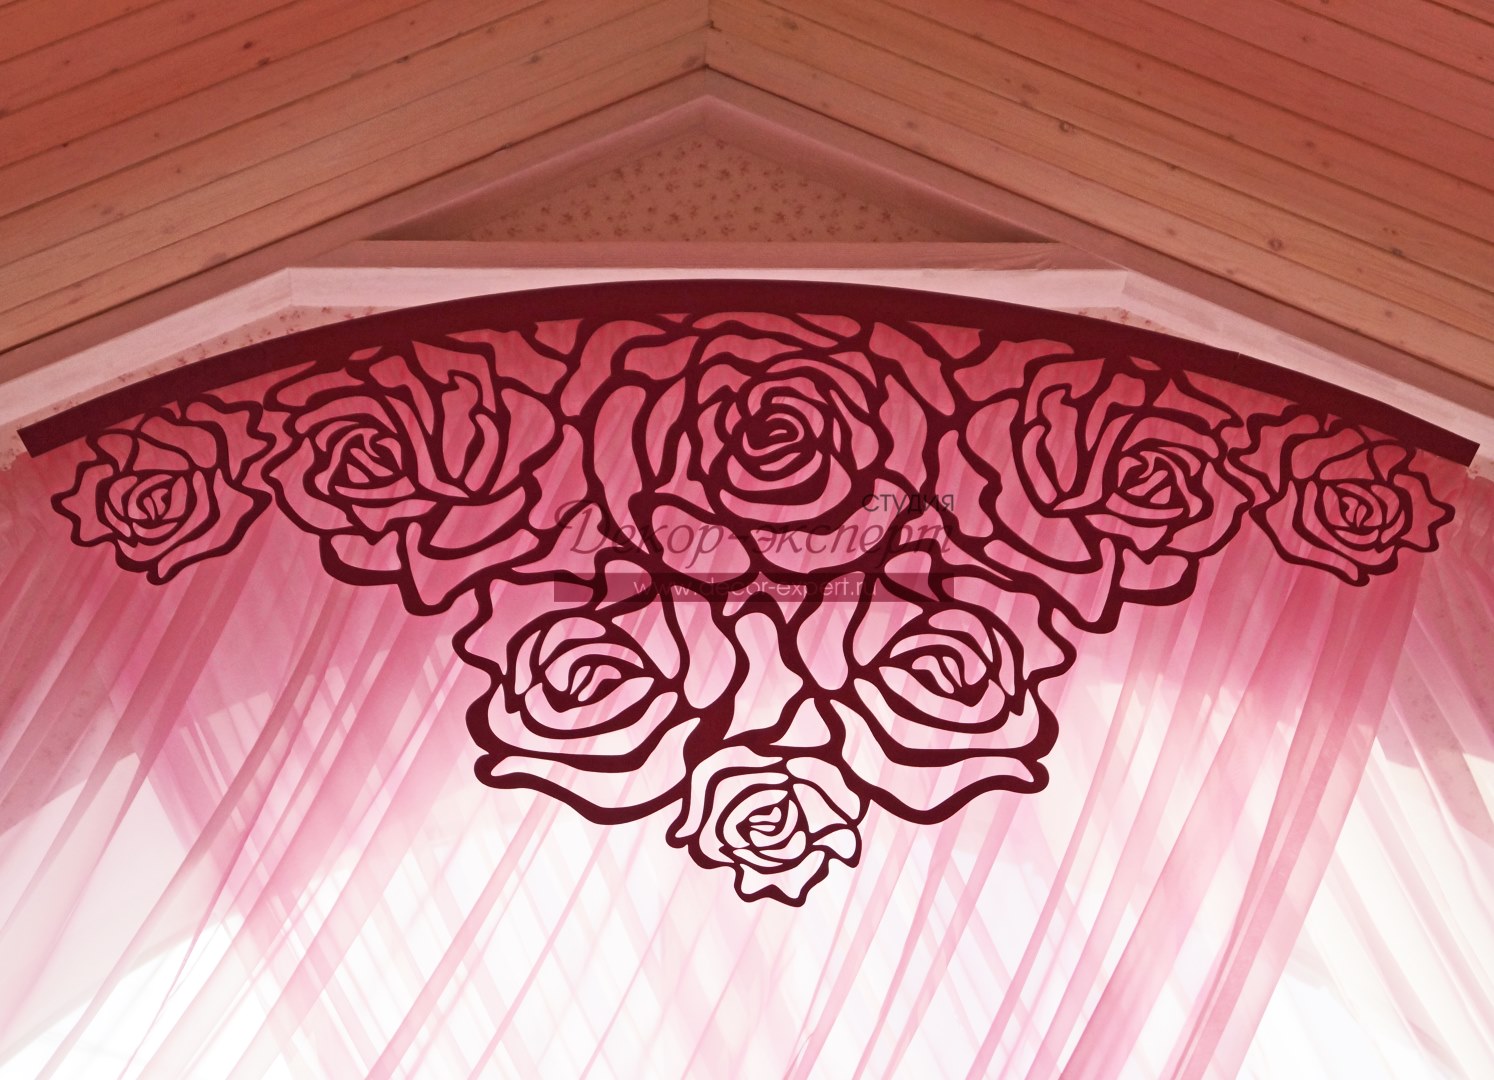 Ажурный ламбрекен "Розы" на изогнутом профильном карнизе для арочного окна. Индивидуальная разработка.